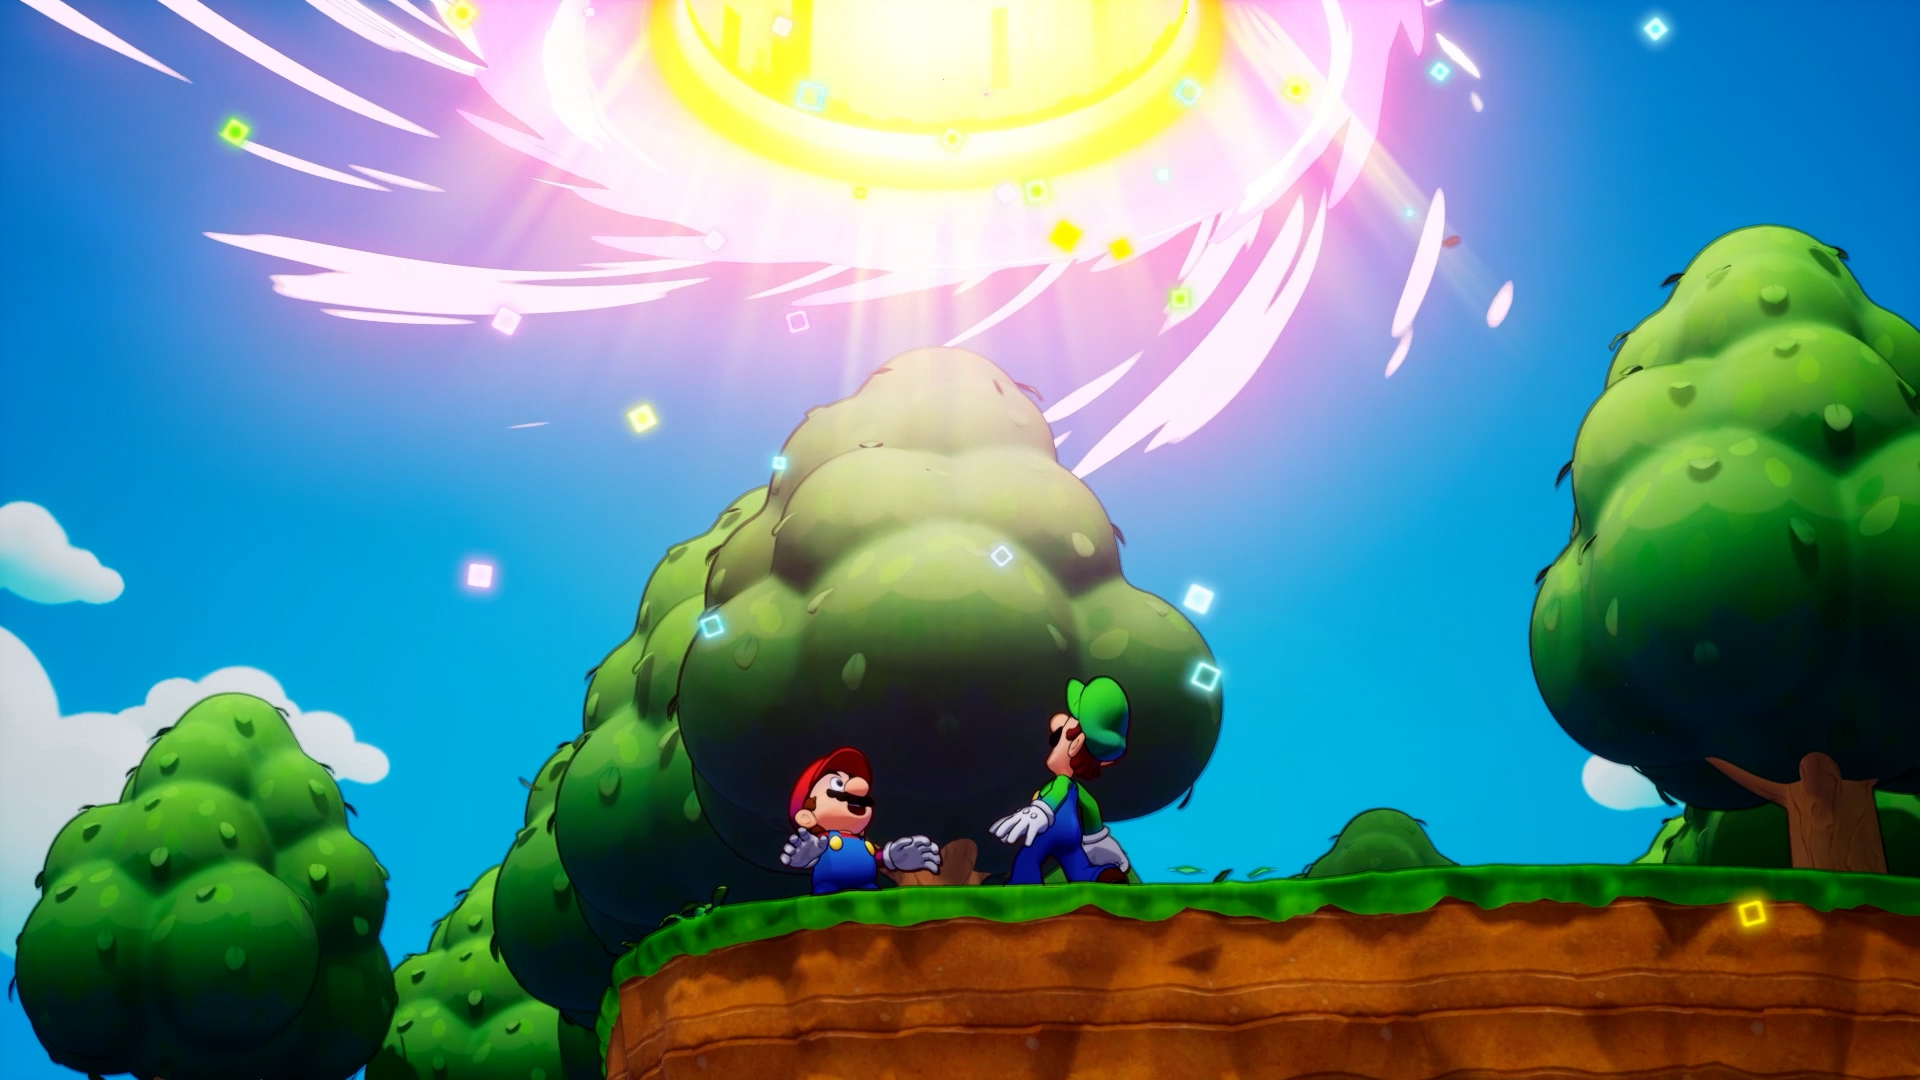 Mario et luigi l epopee fraternelle screenshot 12 12